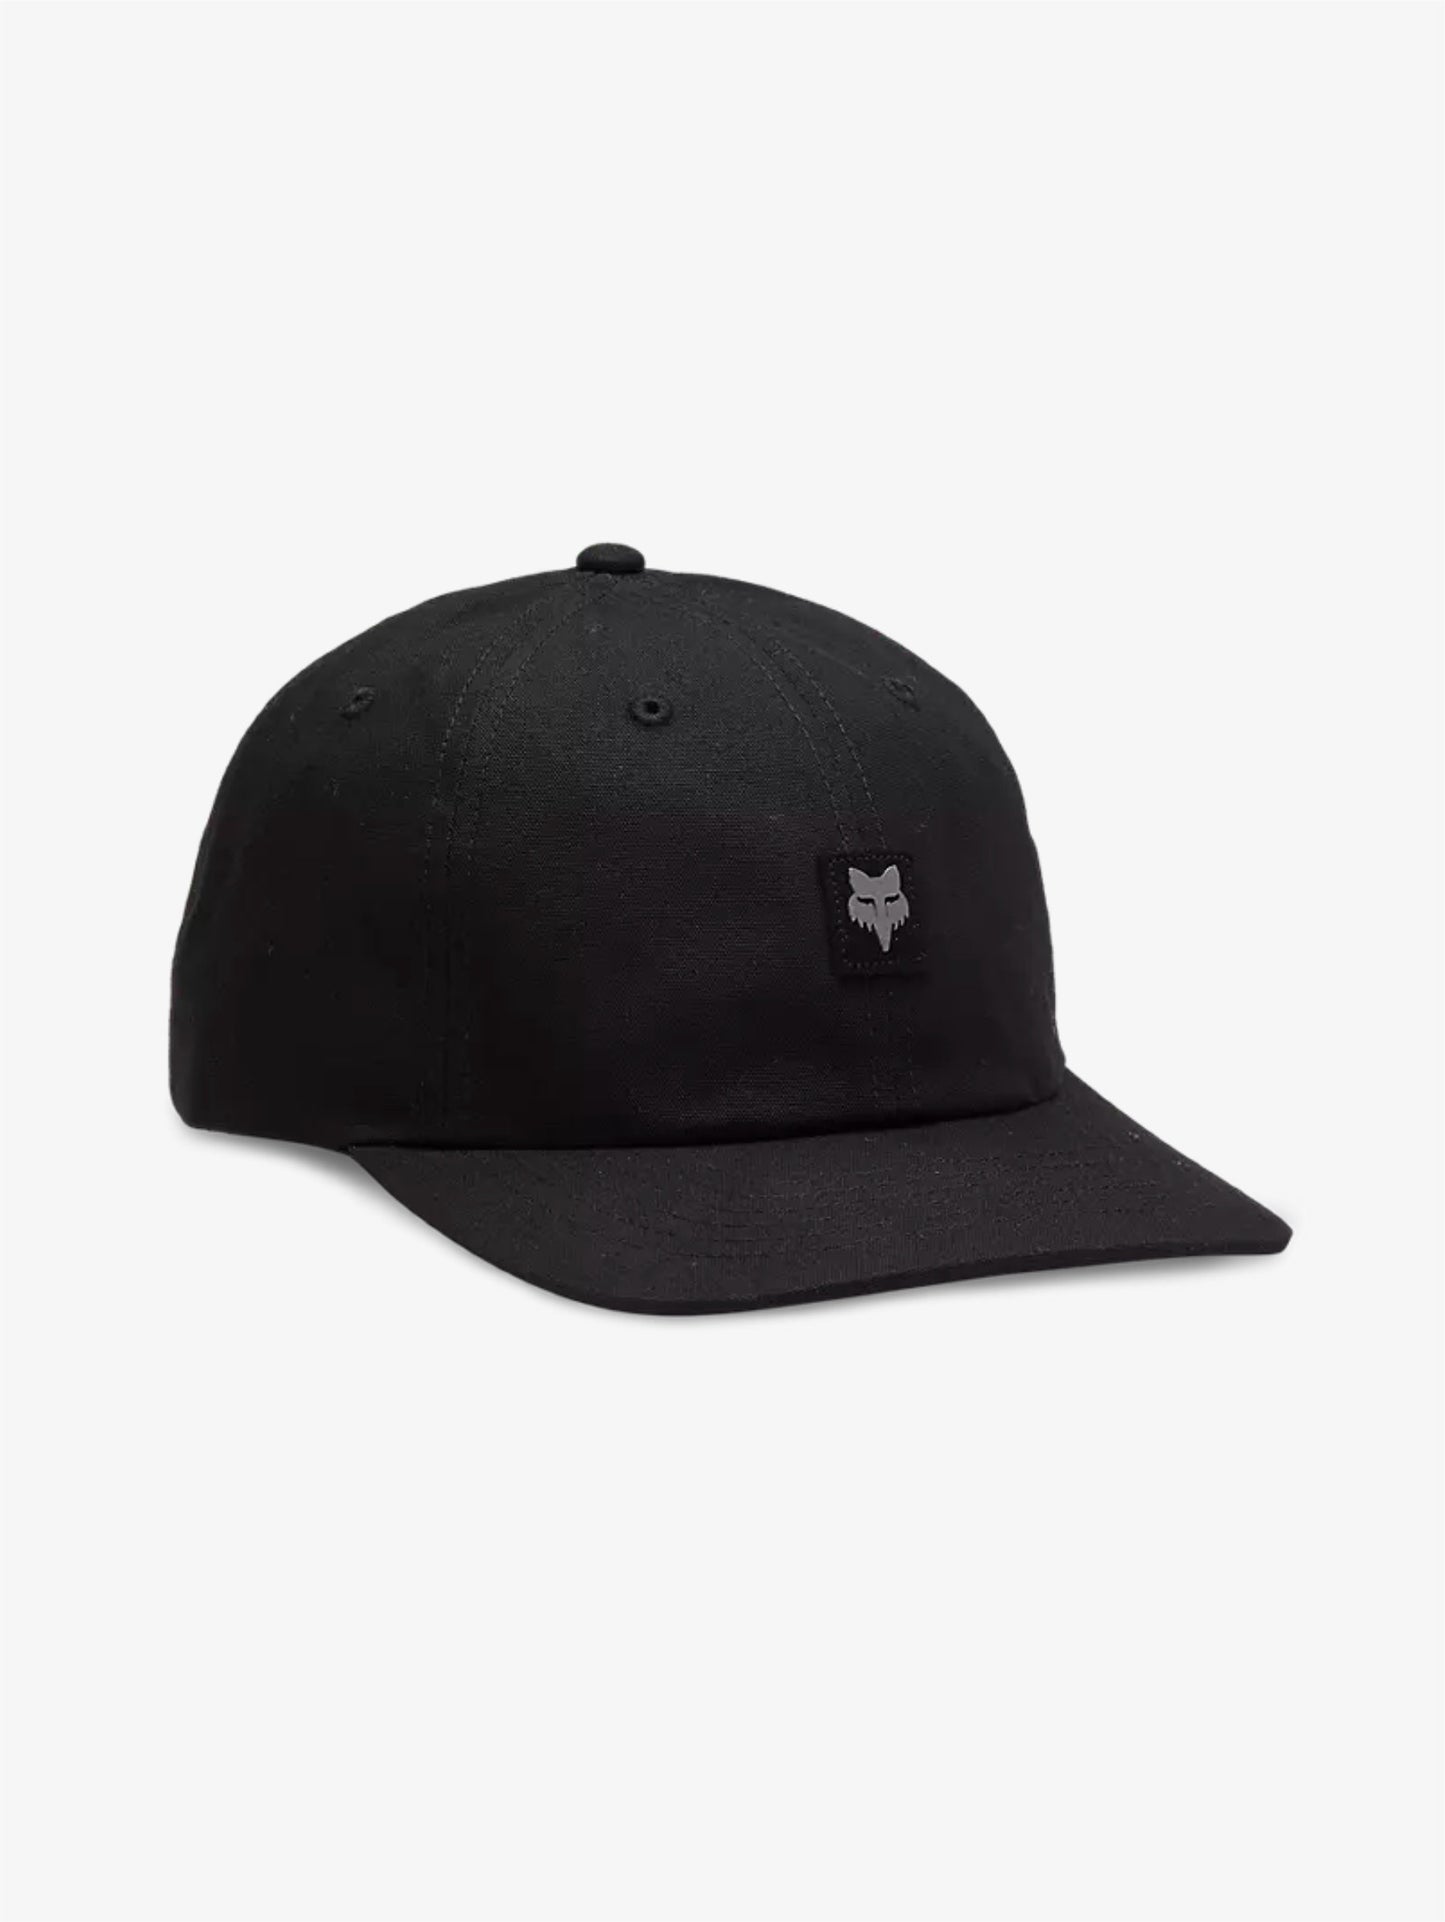 Level up cap black cappellino